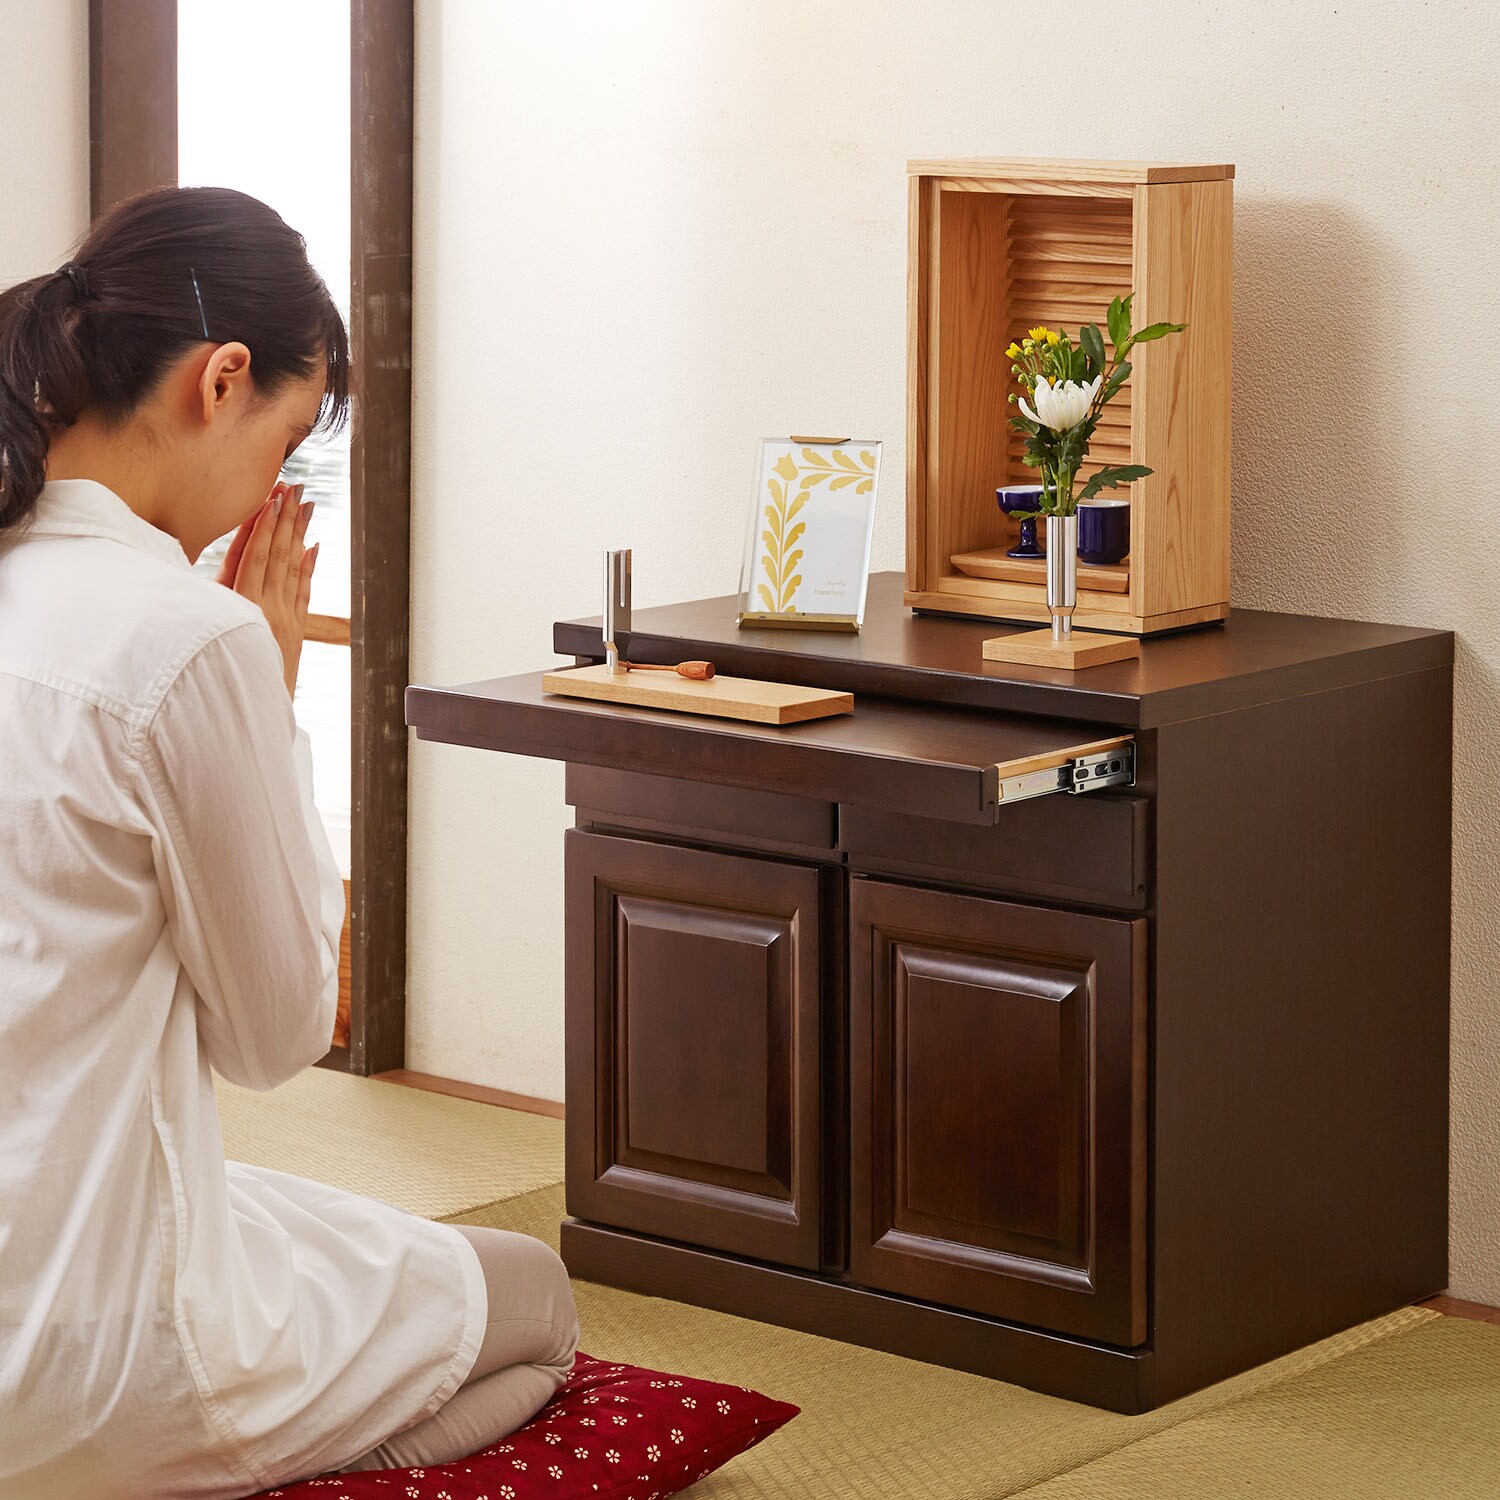 【ベルメゾン】座って手を合わせられる家具調仏壇置き台